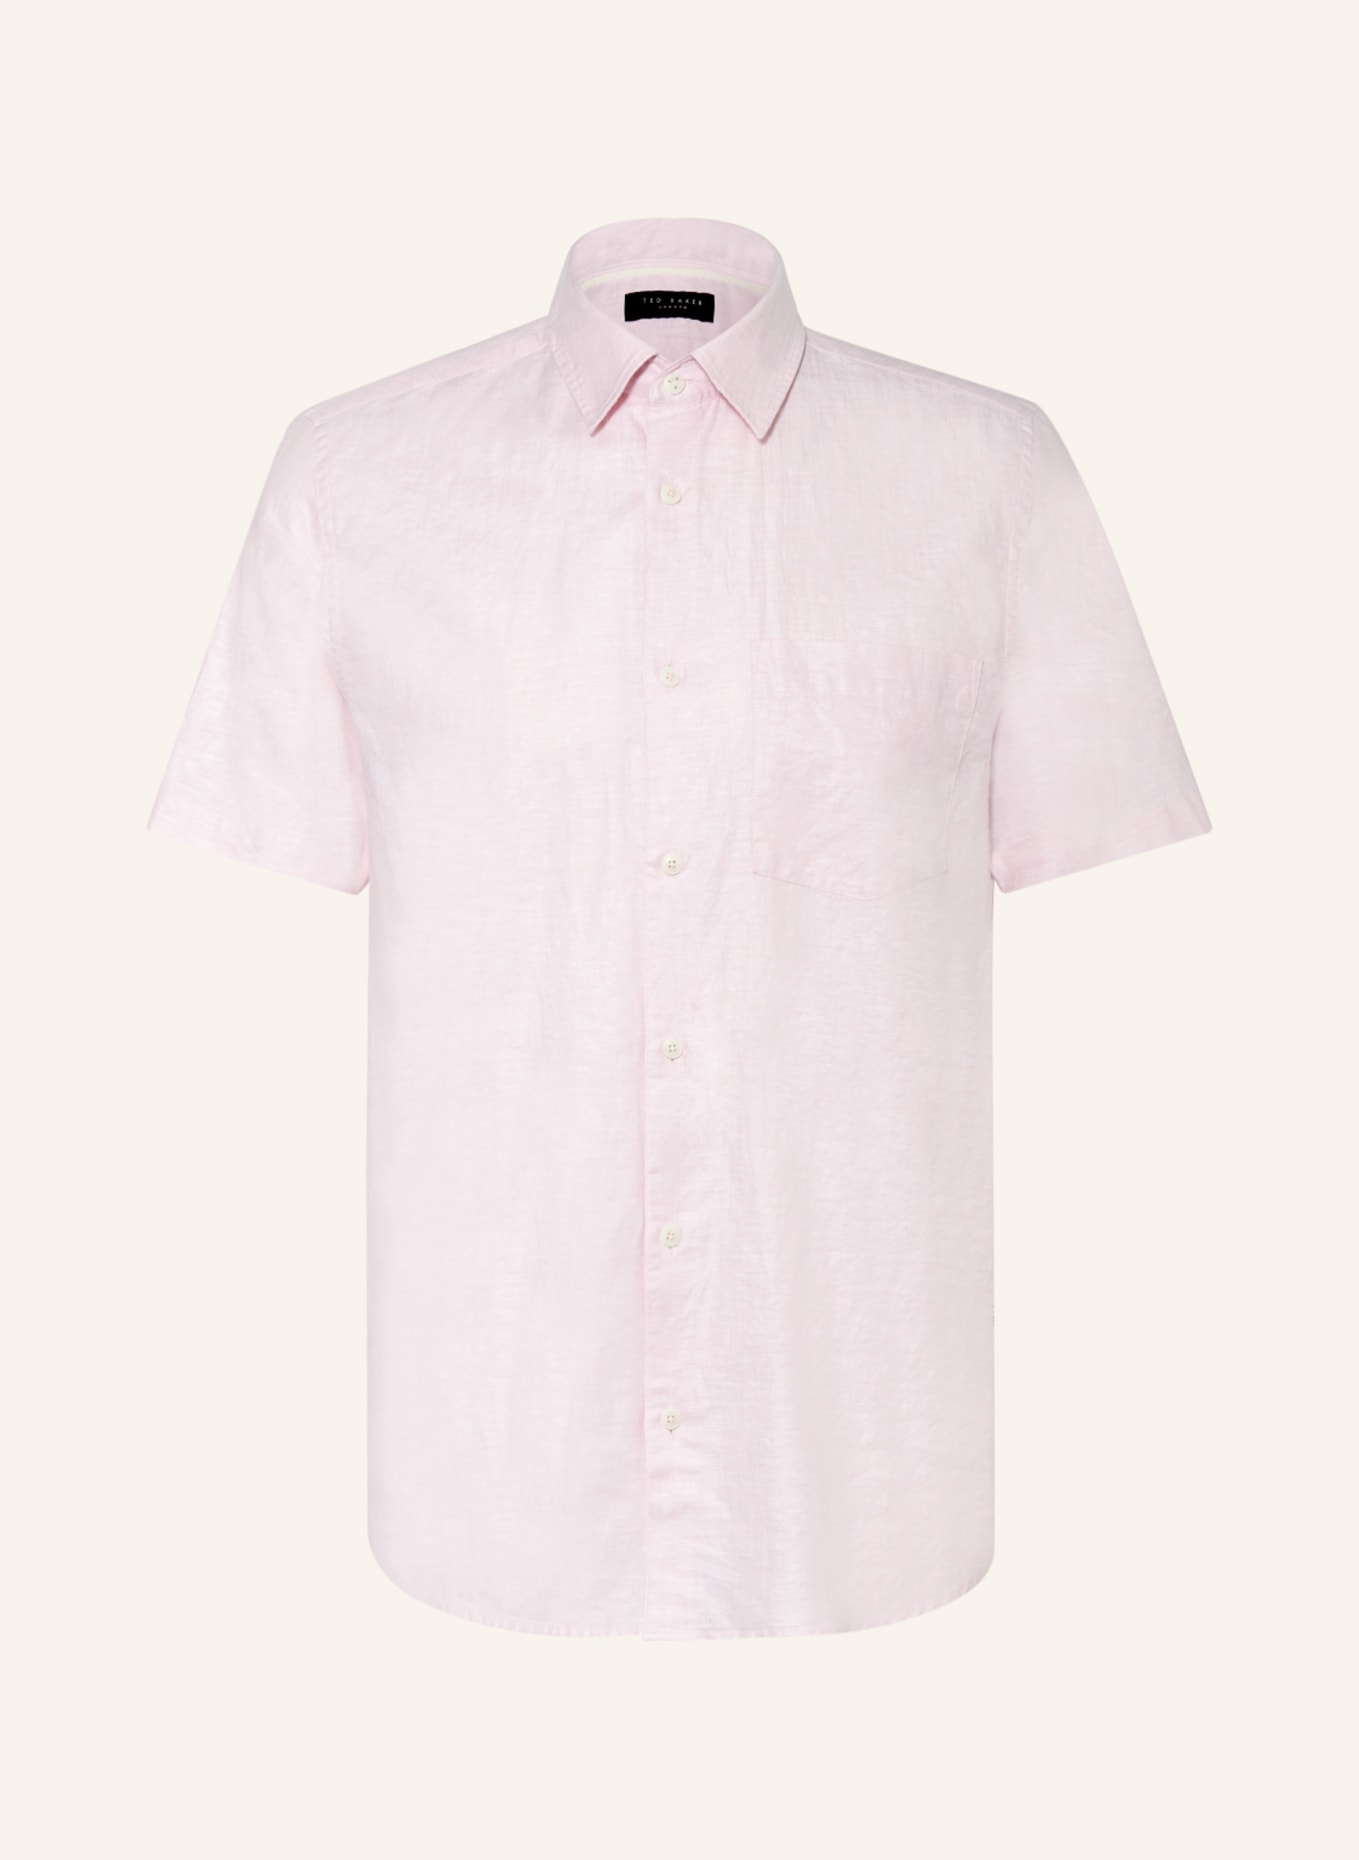 TED BAKER Short sleeve shirt KINGFRD regular fit with linen, Color: LIGHT PINK (Image 1)